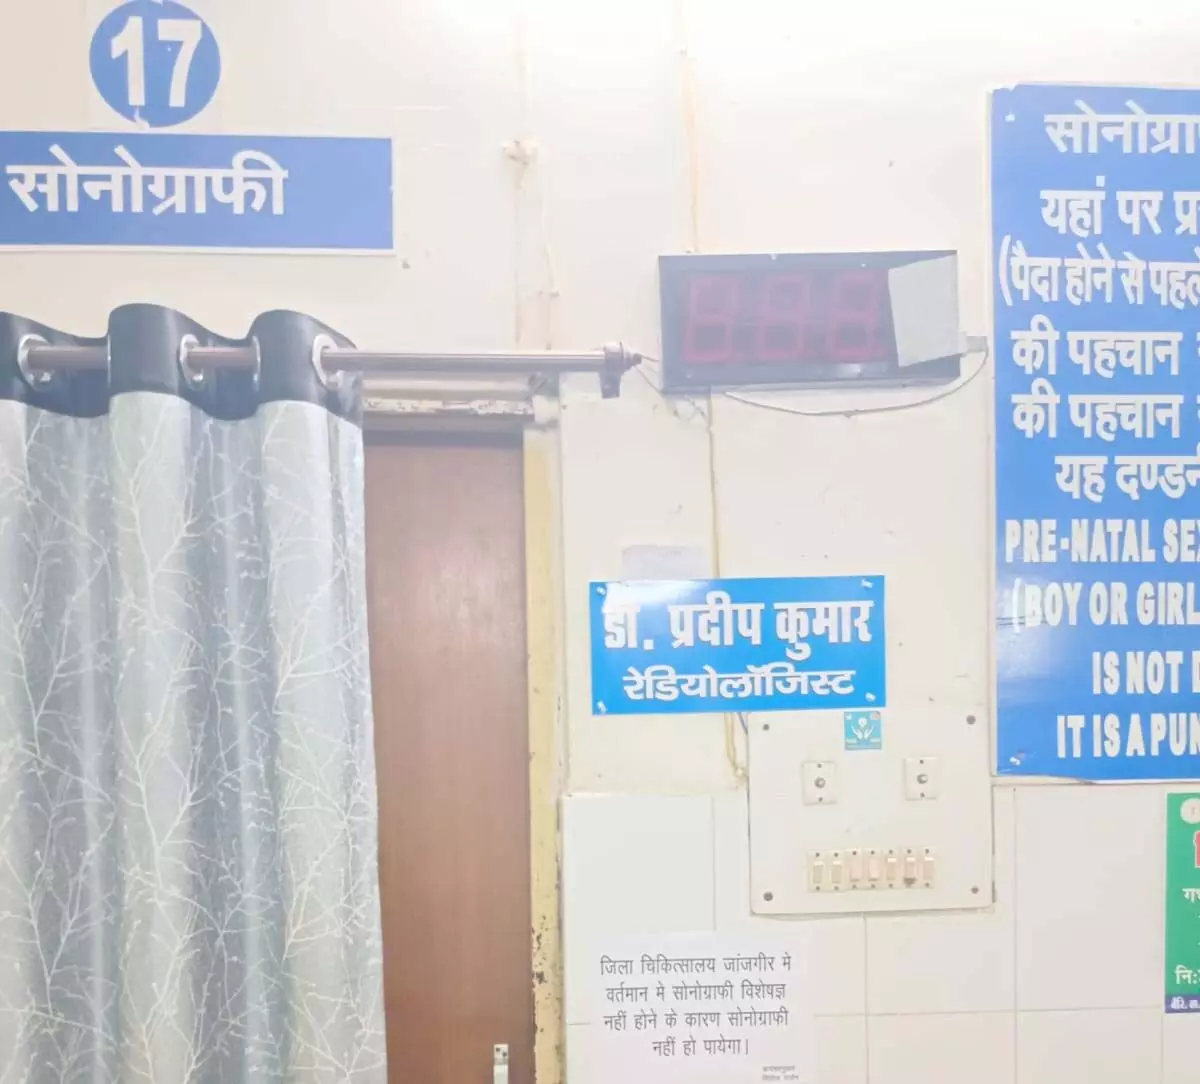 जांजगीर जिले के सबसे बड़े अस्पताल में सोनोग्राफी टेस्ट की सुविधा नही, रेडियोलॉजिस्ट का अभाव